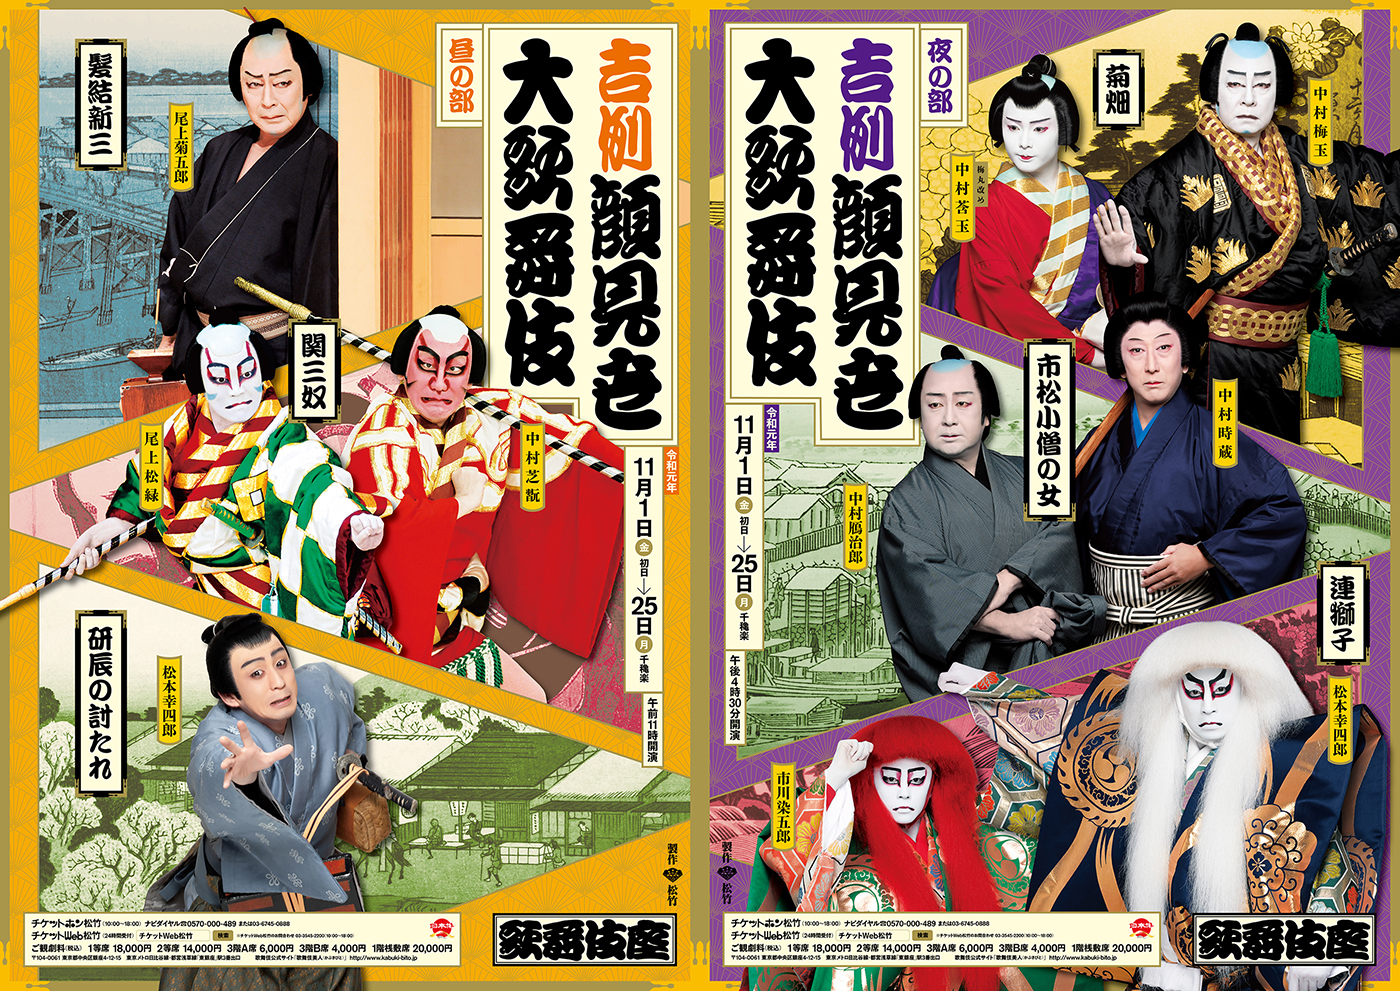 歌舞伎座 吉例顔見世大歌舞伎 昼の部 夜の部の特別ポスターが公開 菊五郎ら出演者が扮装姿で登場 Spice エンタメ特化型情報メディア スパイス